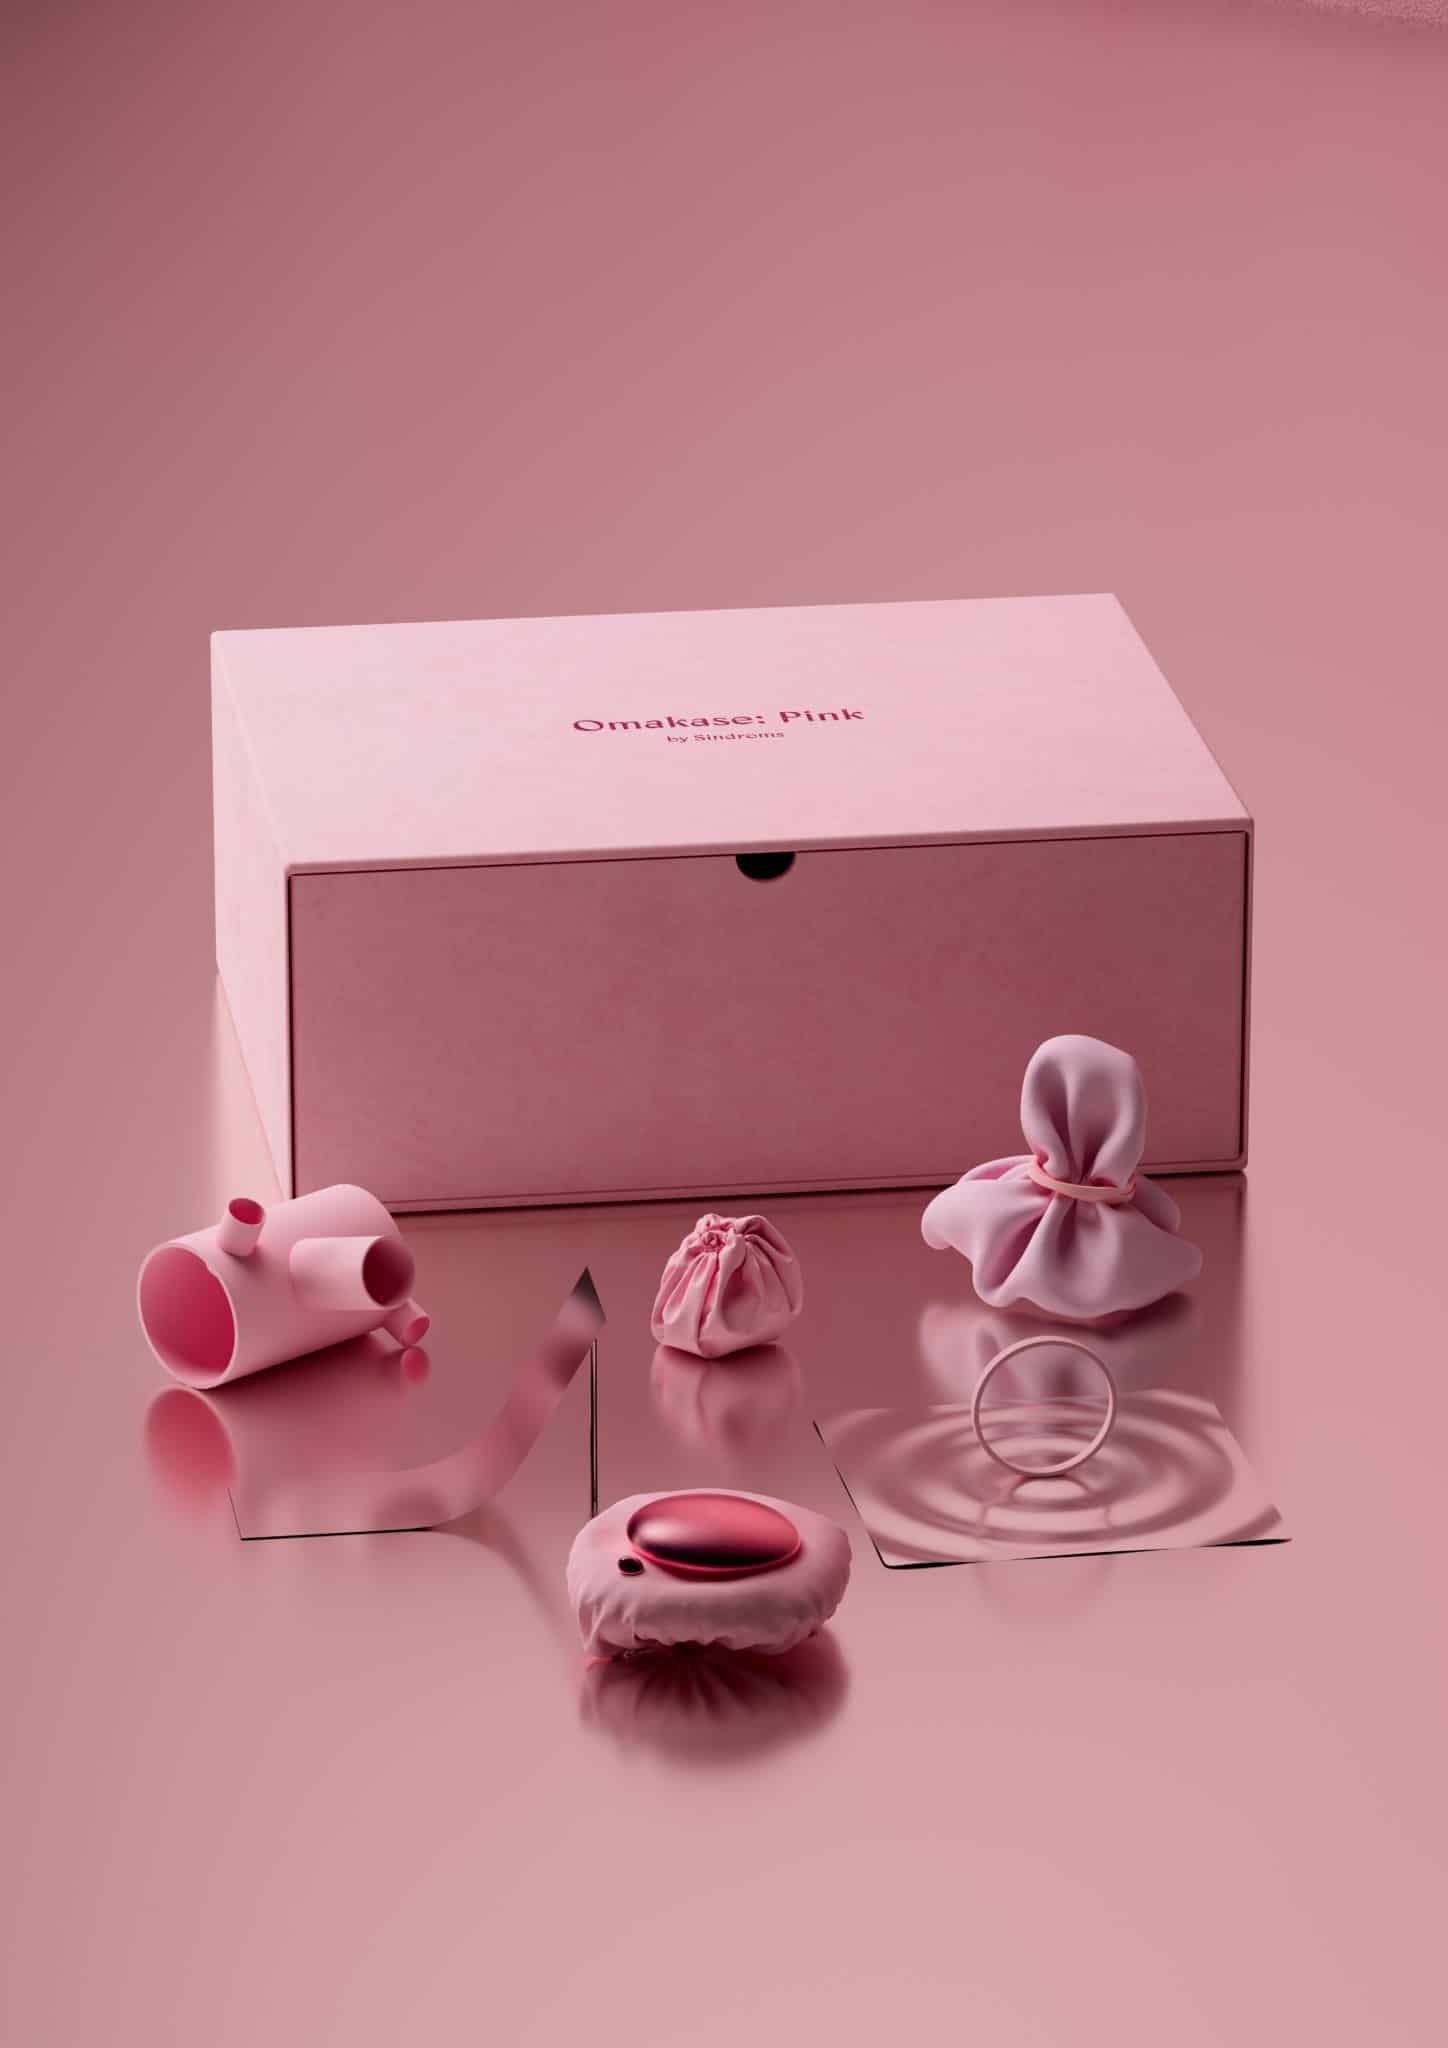 Omakase: Pink par Sindroms, un coffret-cadeau design et original